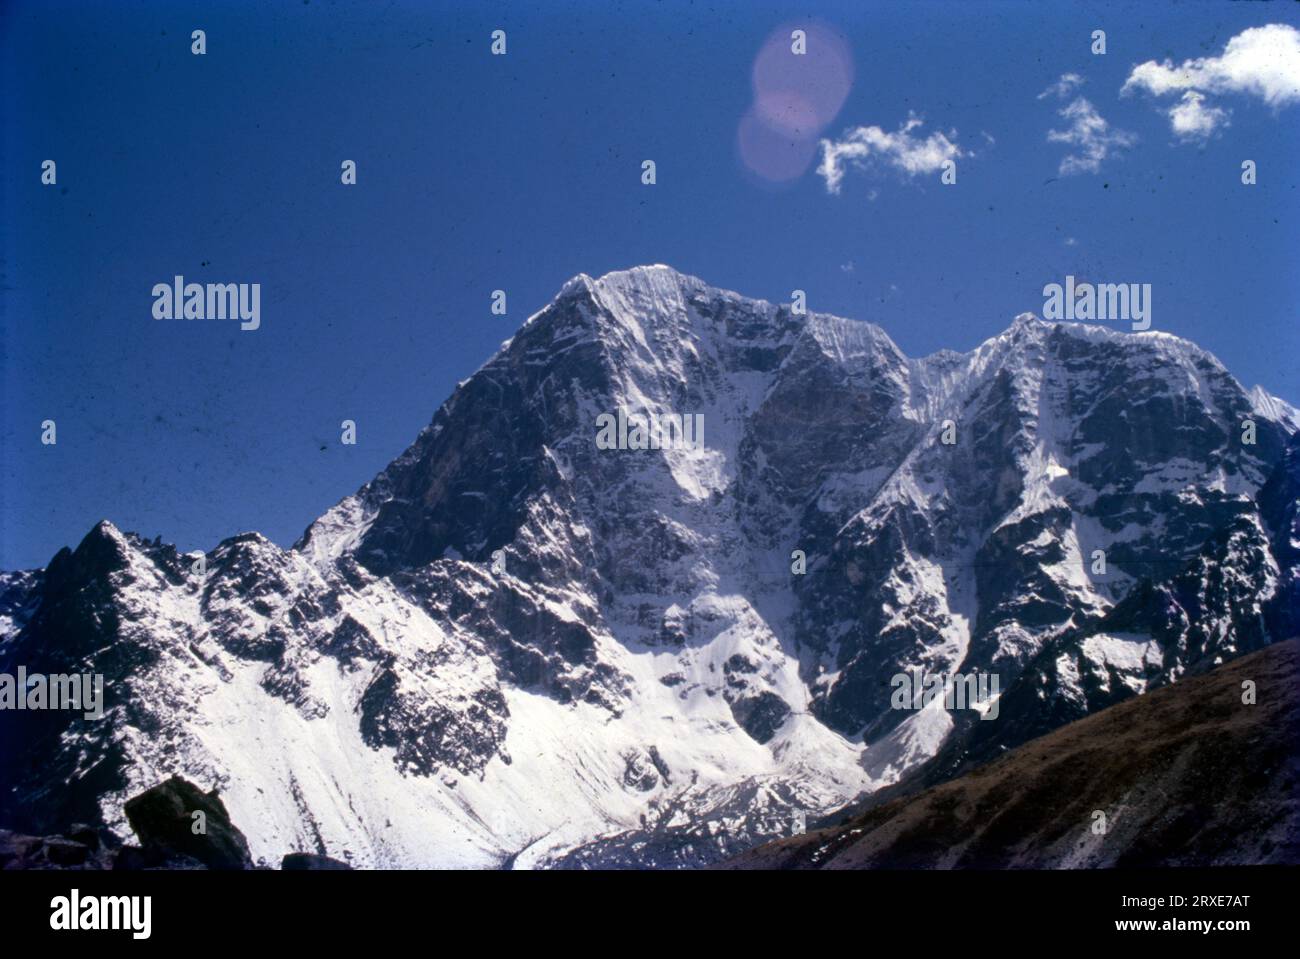 Nuptse oder Nubtse ist ein Berg in der Khumbu-Region des Mahalangur Himal im nepalesischen Himalaya. Es liegt zwei Kilometer westlich vom Mount Everest. Nubtse ist tibetisch für den „Westgipfel“, da es das westliche Segment des Massivs Lhotse-Nubtse ist. Stockfoto